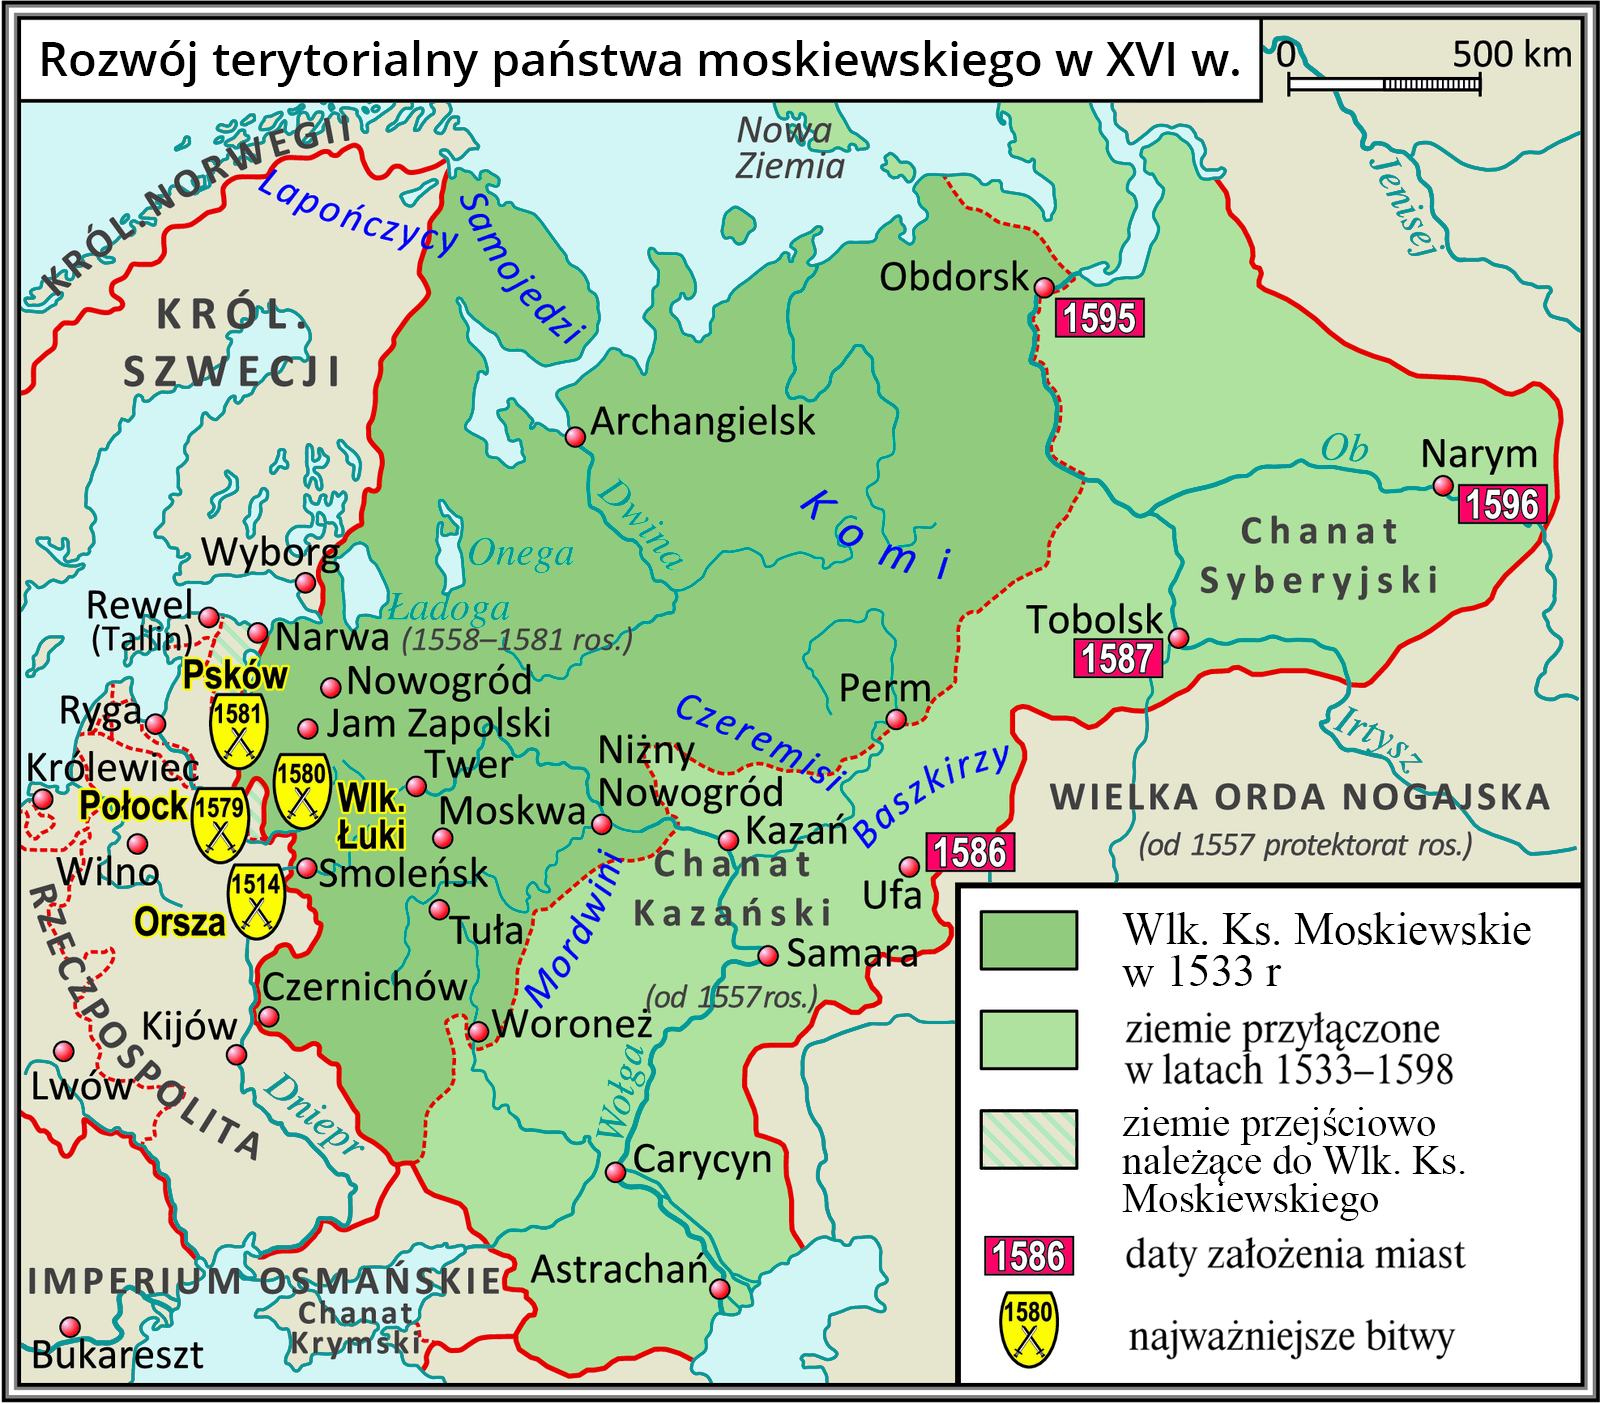 Mapa przedstawia rozwój terytorialny państwa moskiewskiego w XVI wieku. Na mapie zaznaczone zostały tereny Wielkiego Księstwa Moskiewskiego w 1533 roku obejmujące tereny od północy, od Morza Barentsa, poprzez Obdorsk, Perm, Woroneż na wschodzie i Czernichów, Smoleńsk do Narwy na północnym‑zachodzie. Ziemie przyłączone w latach 1533‑1598 obejmowały Chanat Syberyjski i Chanat Kazański aż po Astrachań. Na mapie zaznaczono także daty założenia miast: Obdorsk (1595), Narym (1596), Tobolsk (1587), Ufa (1586). Są na niej także wskazane najważniejsze bitwy: pod Pskowem (1581), Połockiem (1579), Wielkimi Łukami (1580) i Orszą (1514).